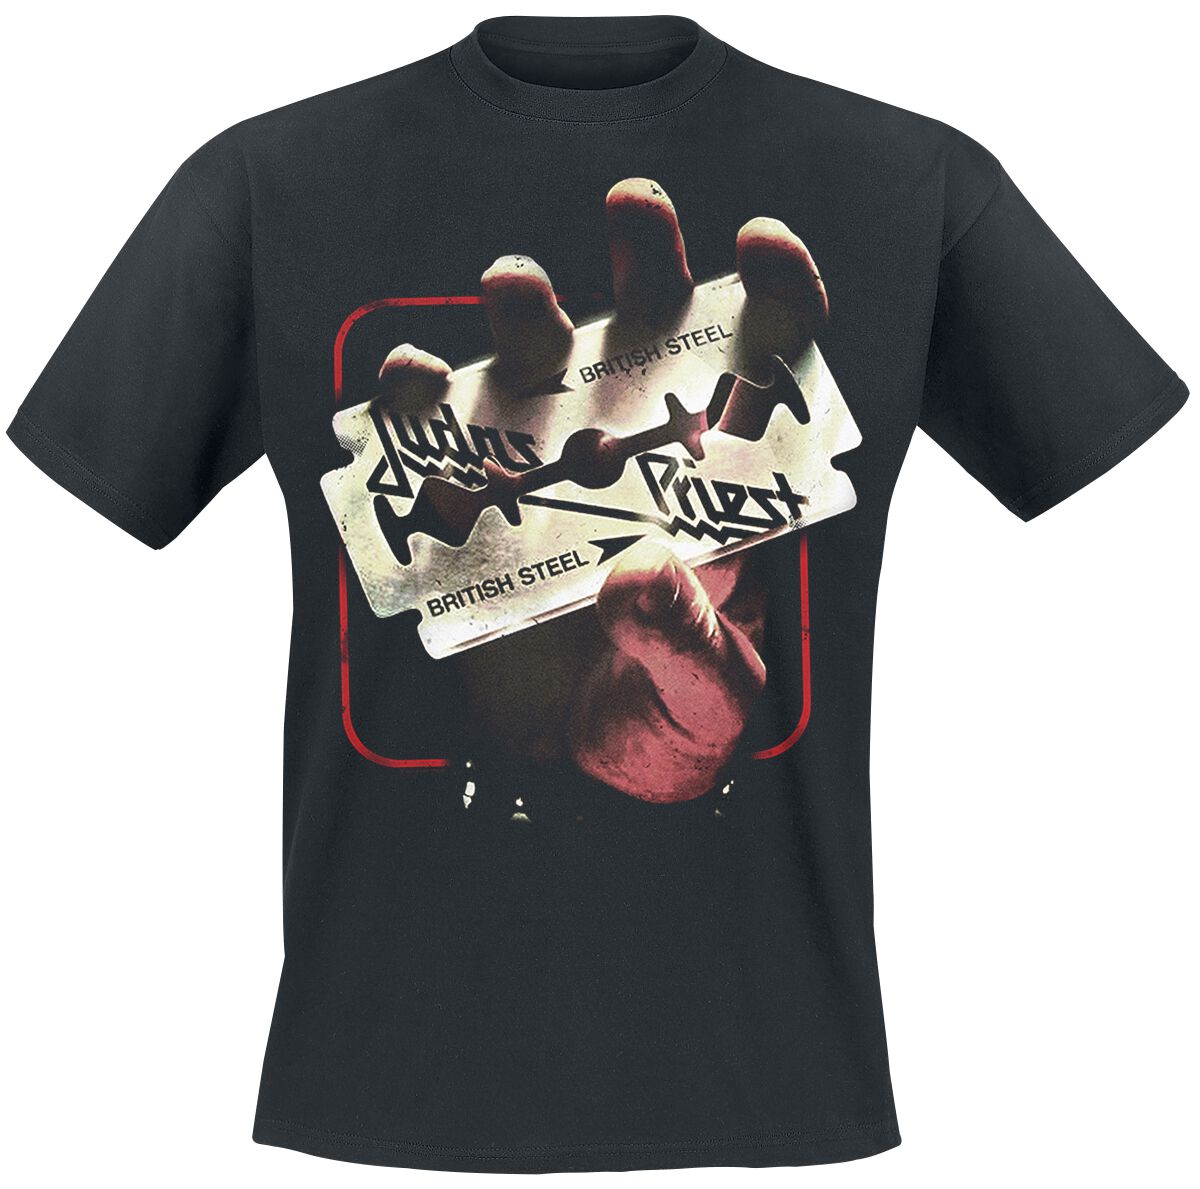 Judas Priest British Steel 50HMY Tour T-Shirt schwarz in M